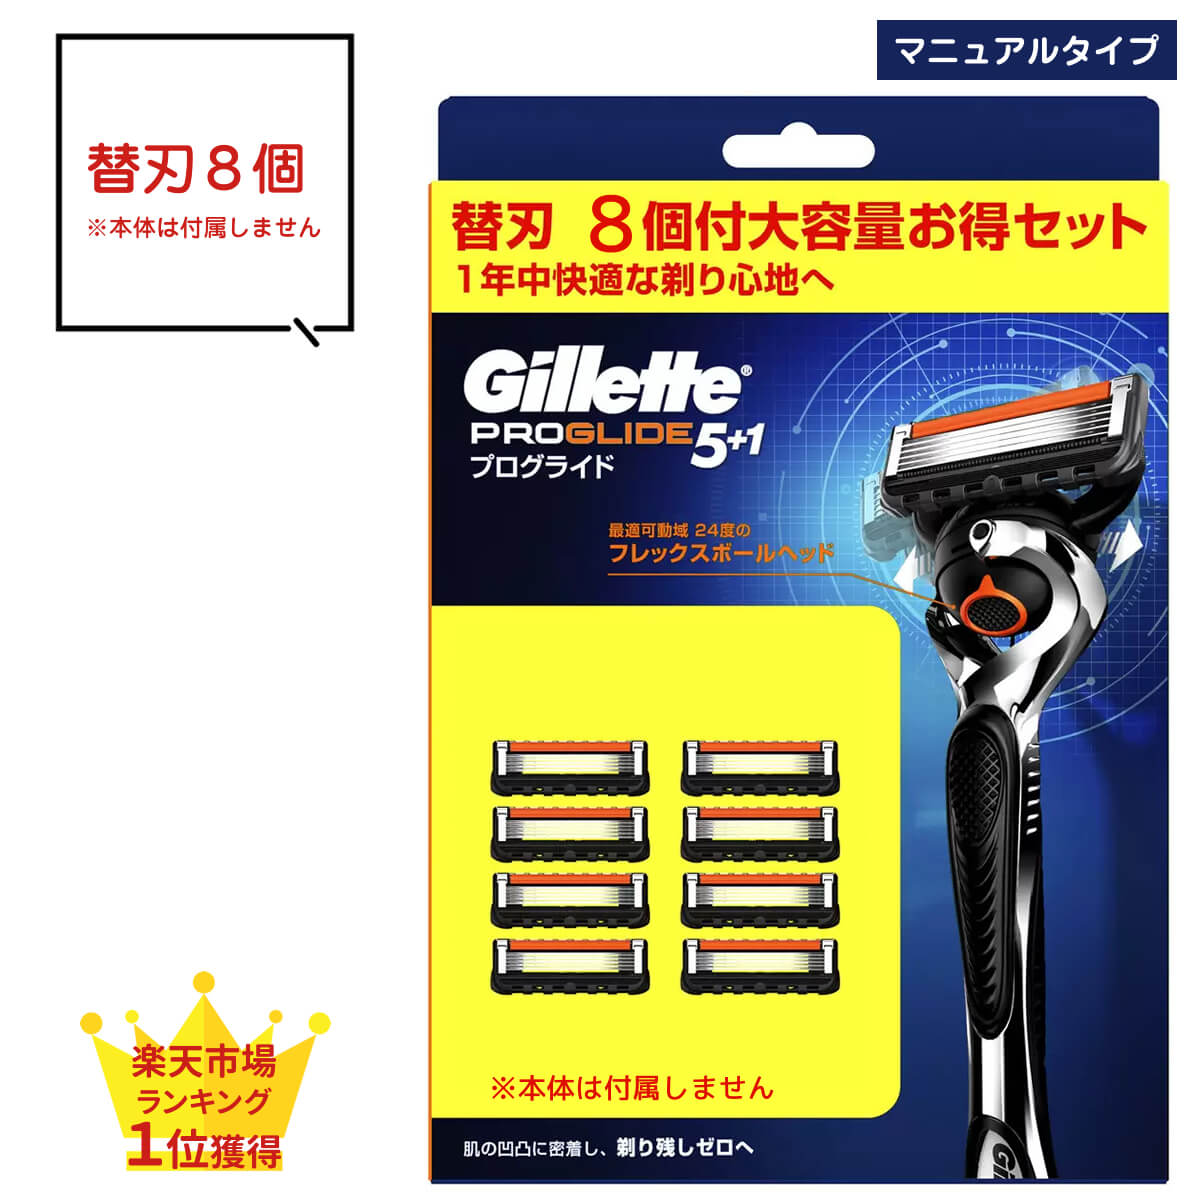 最安価格挑戦 Gillette プログライド 替刃セット | www.takalamtech.com